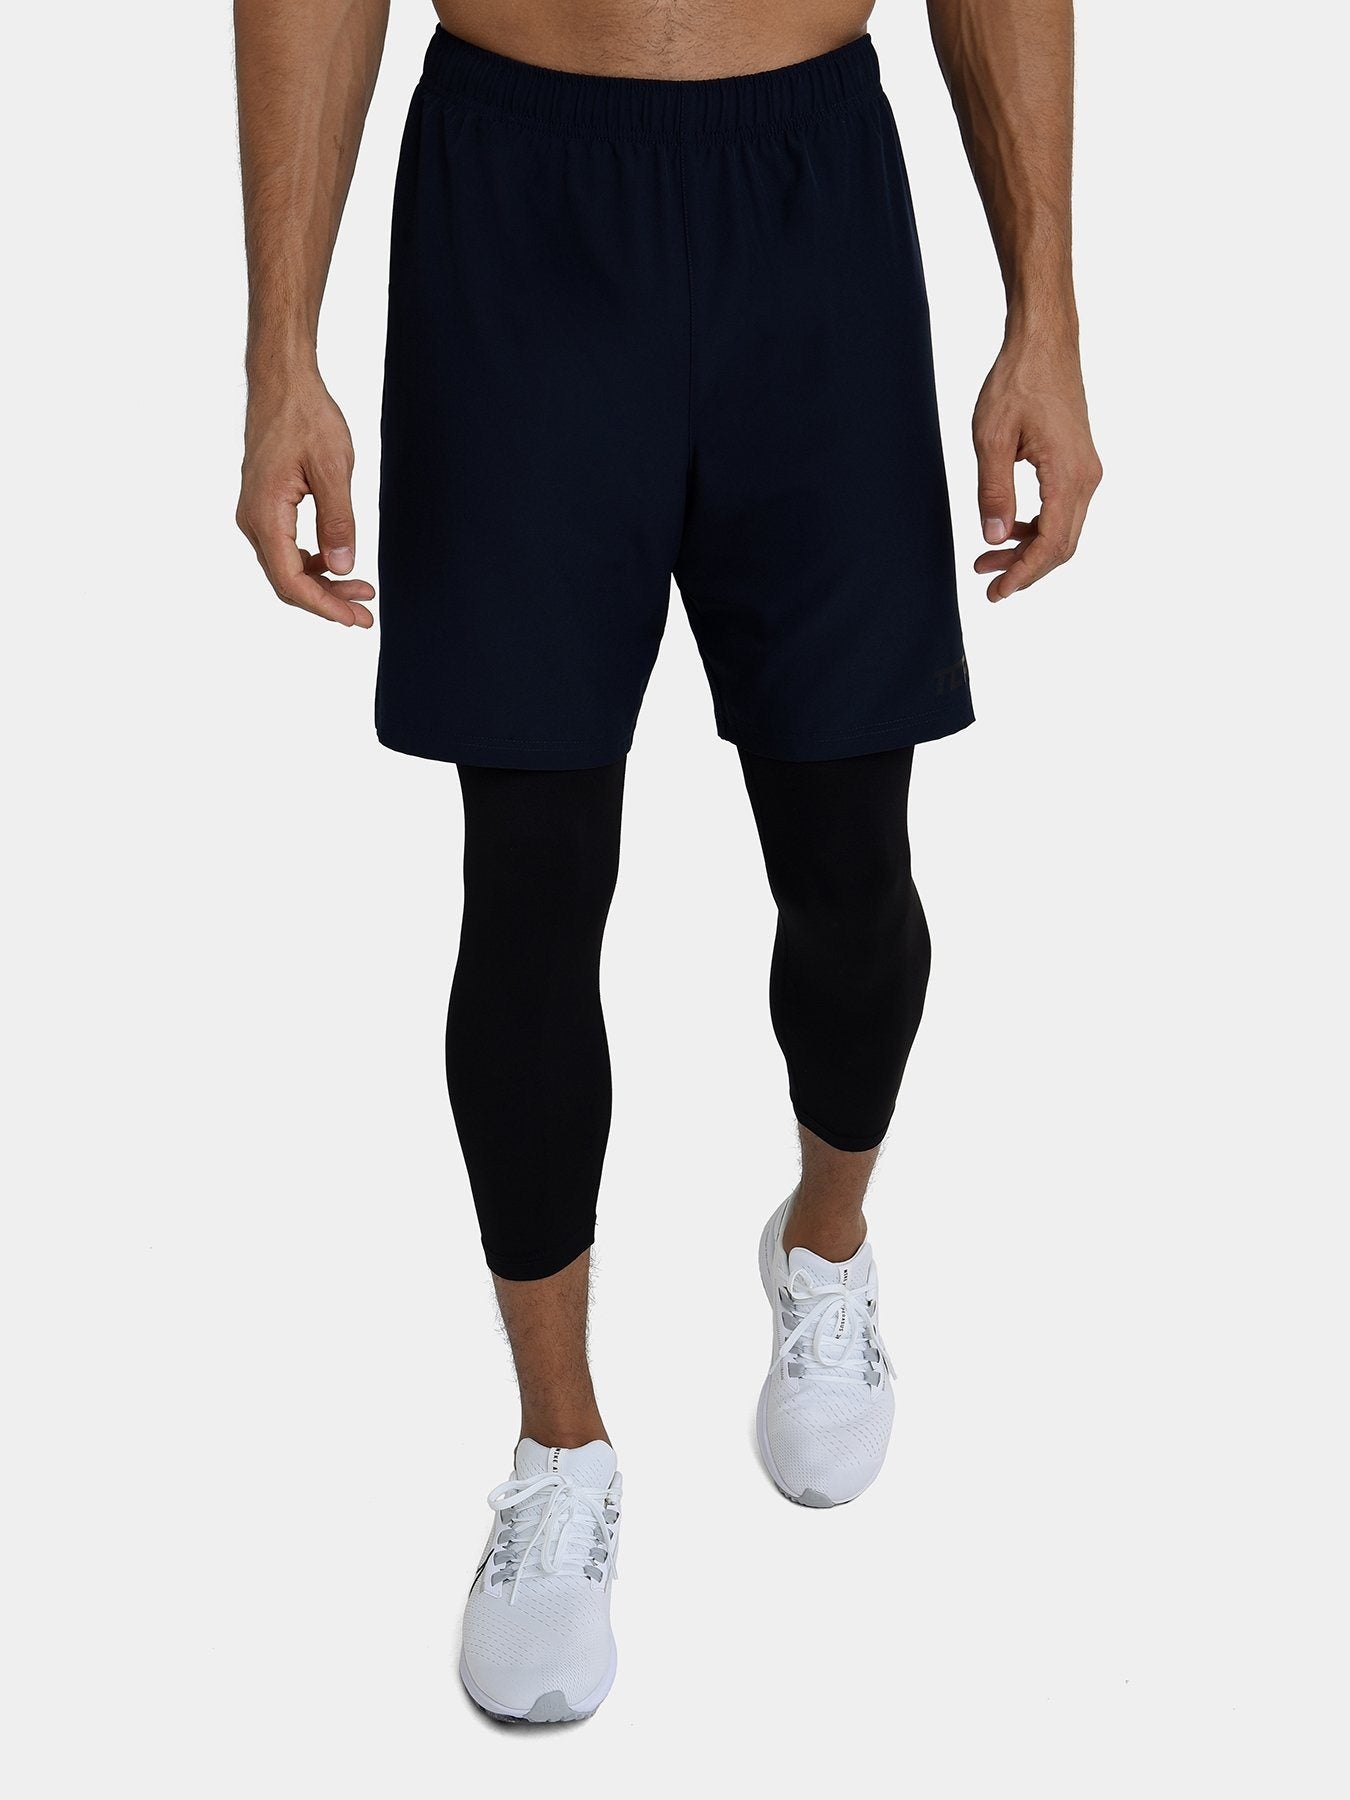 Men's short running leggings